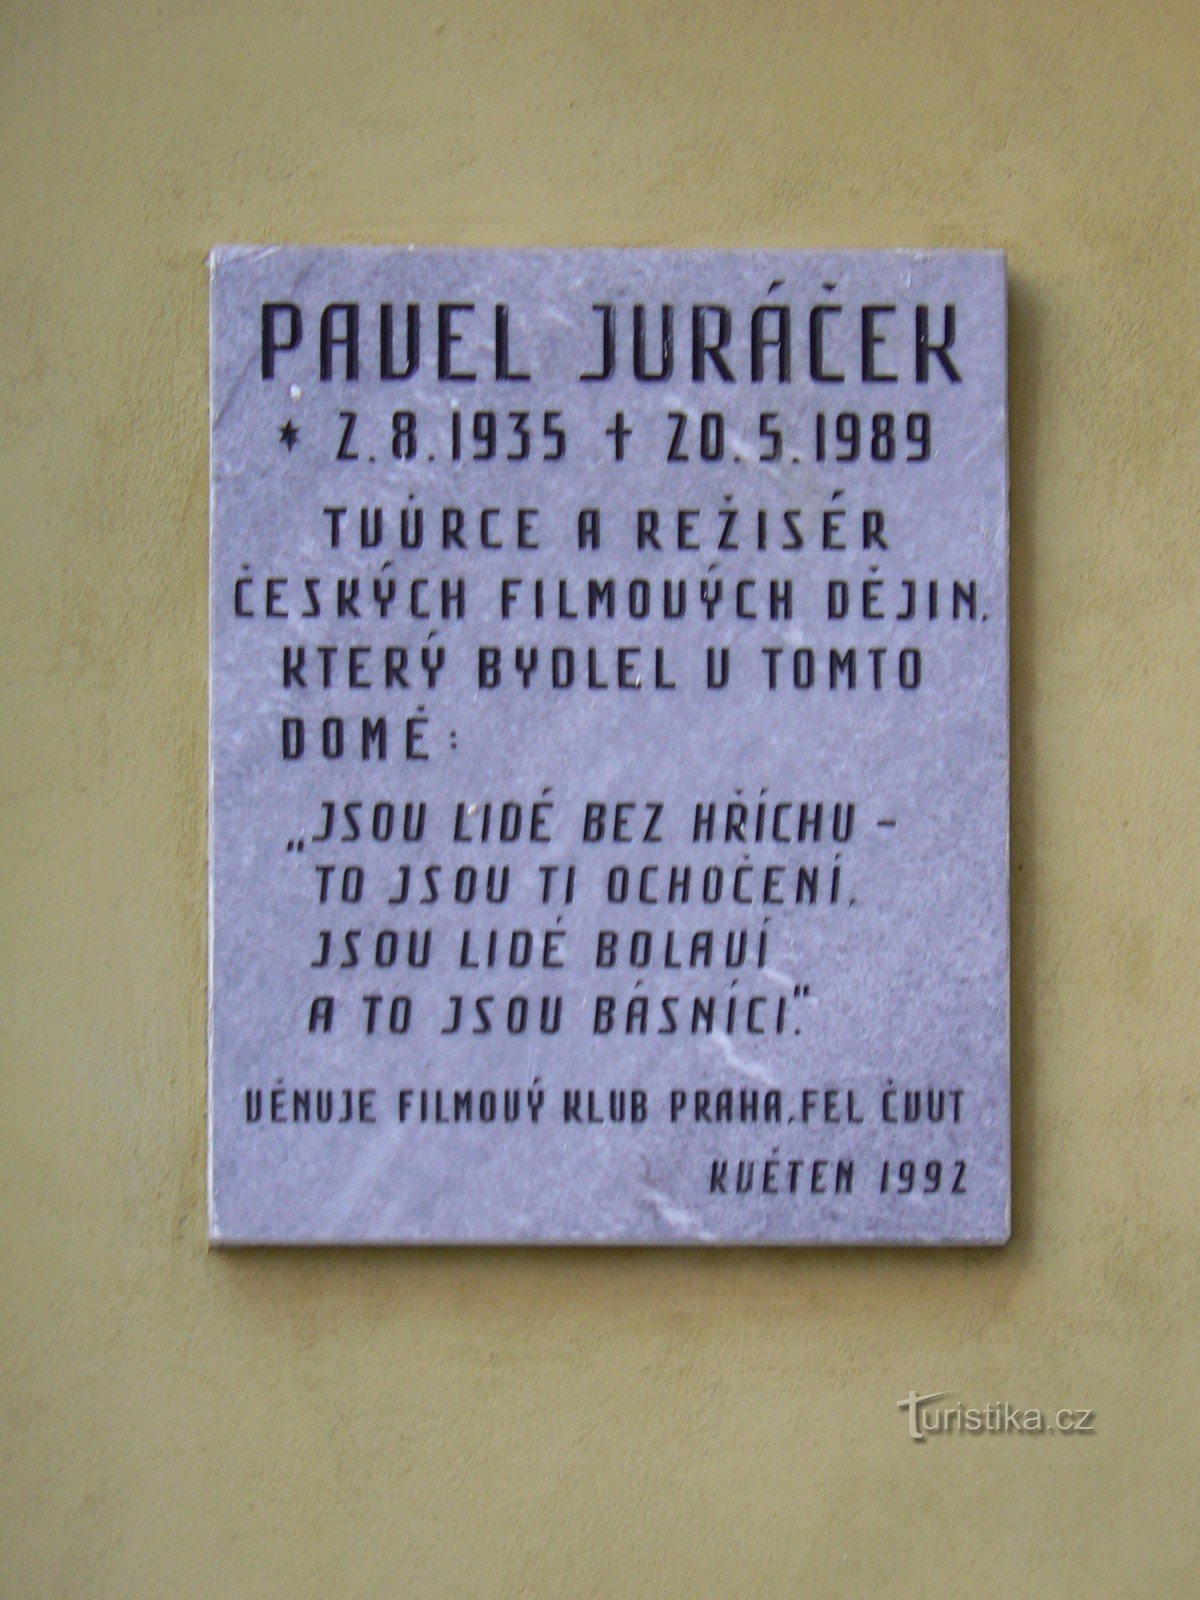 Tấm bảng tưởng niệm Pavel Juráček